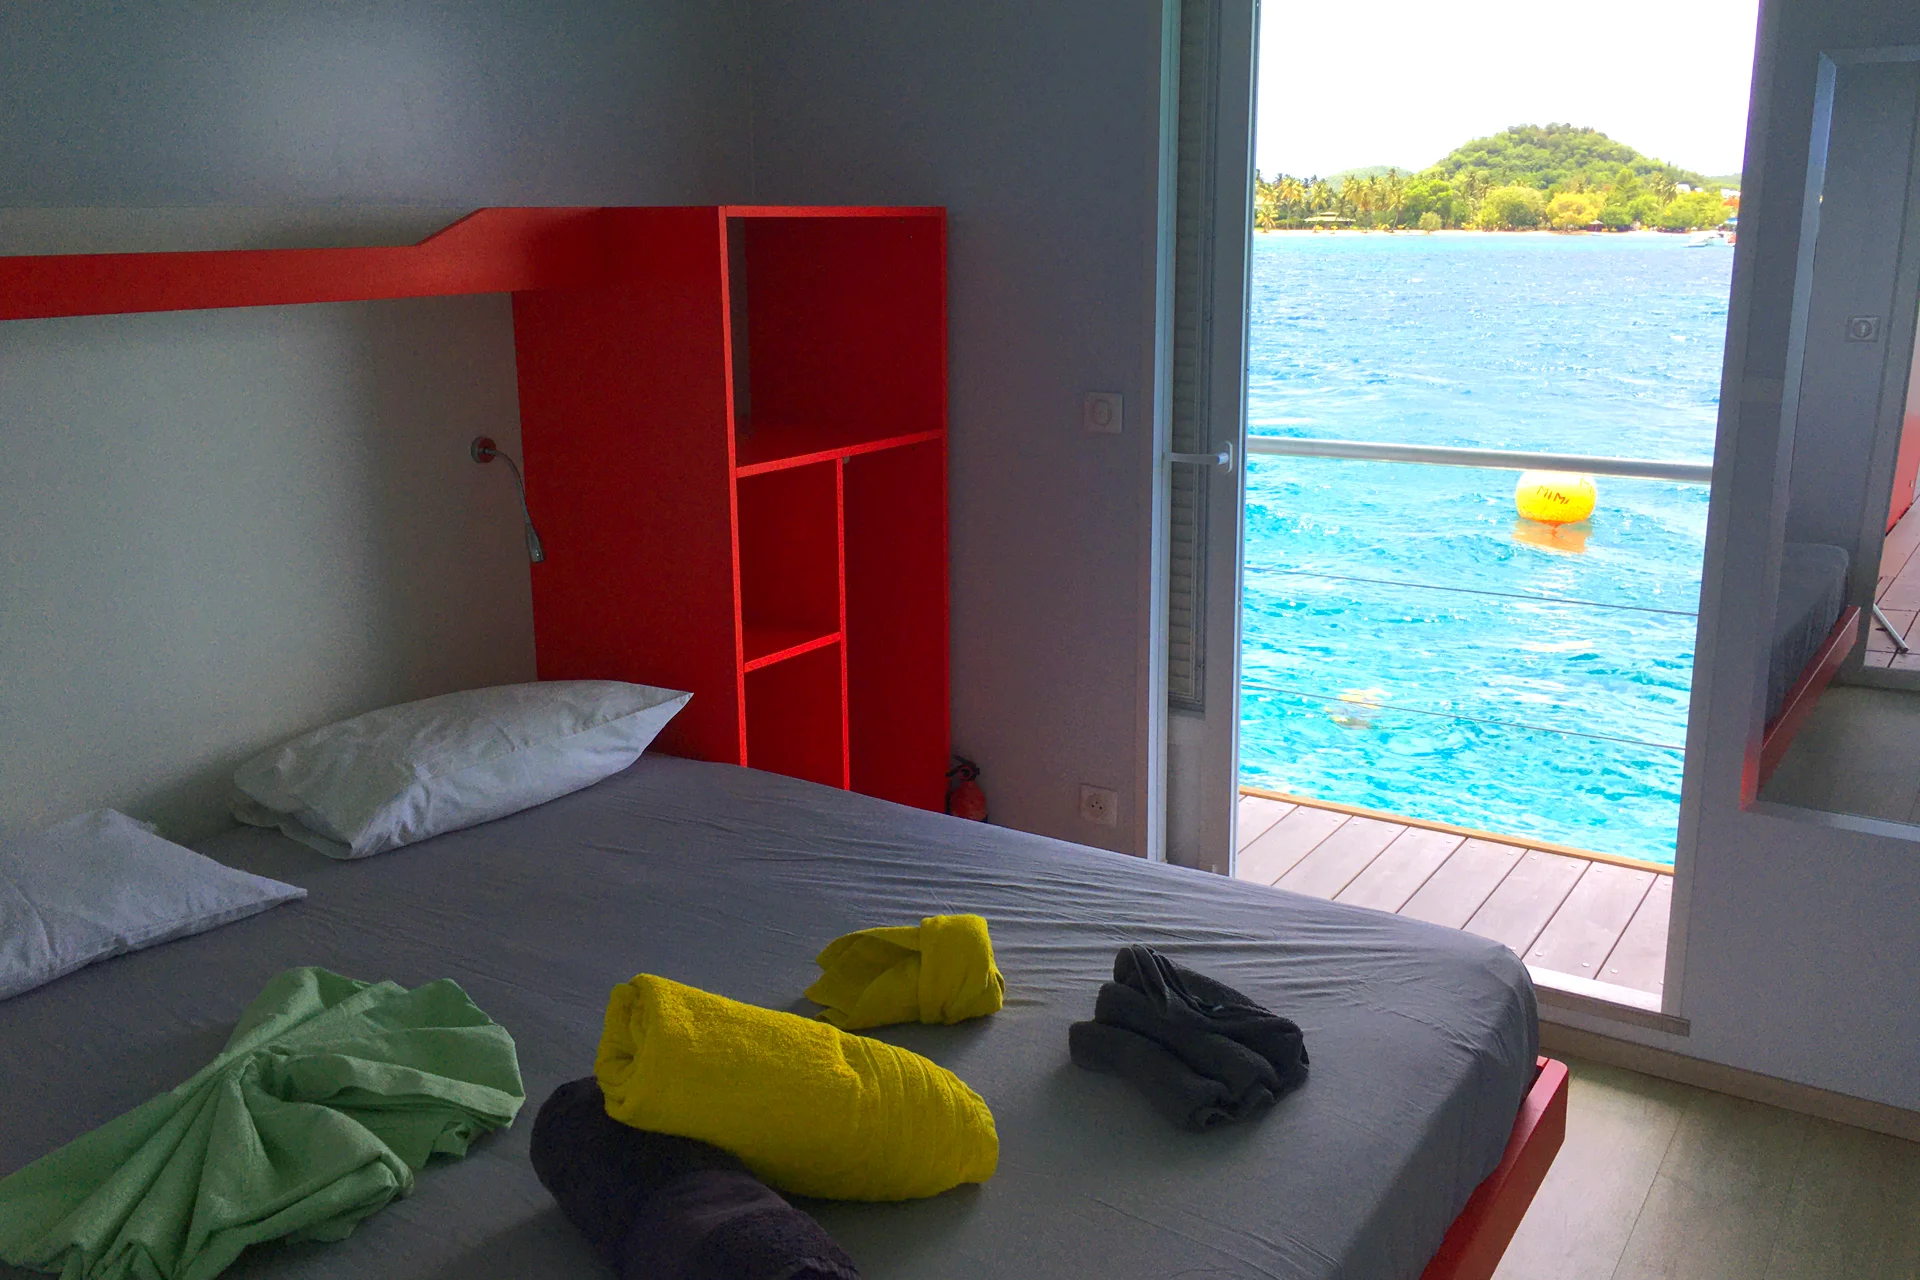 Dormitorio en una villa flotante tipo «aqualodge» y yate de alquiler